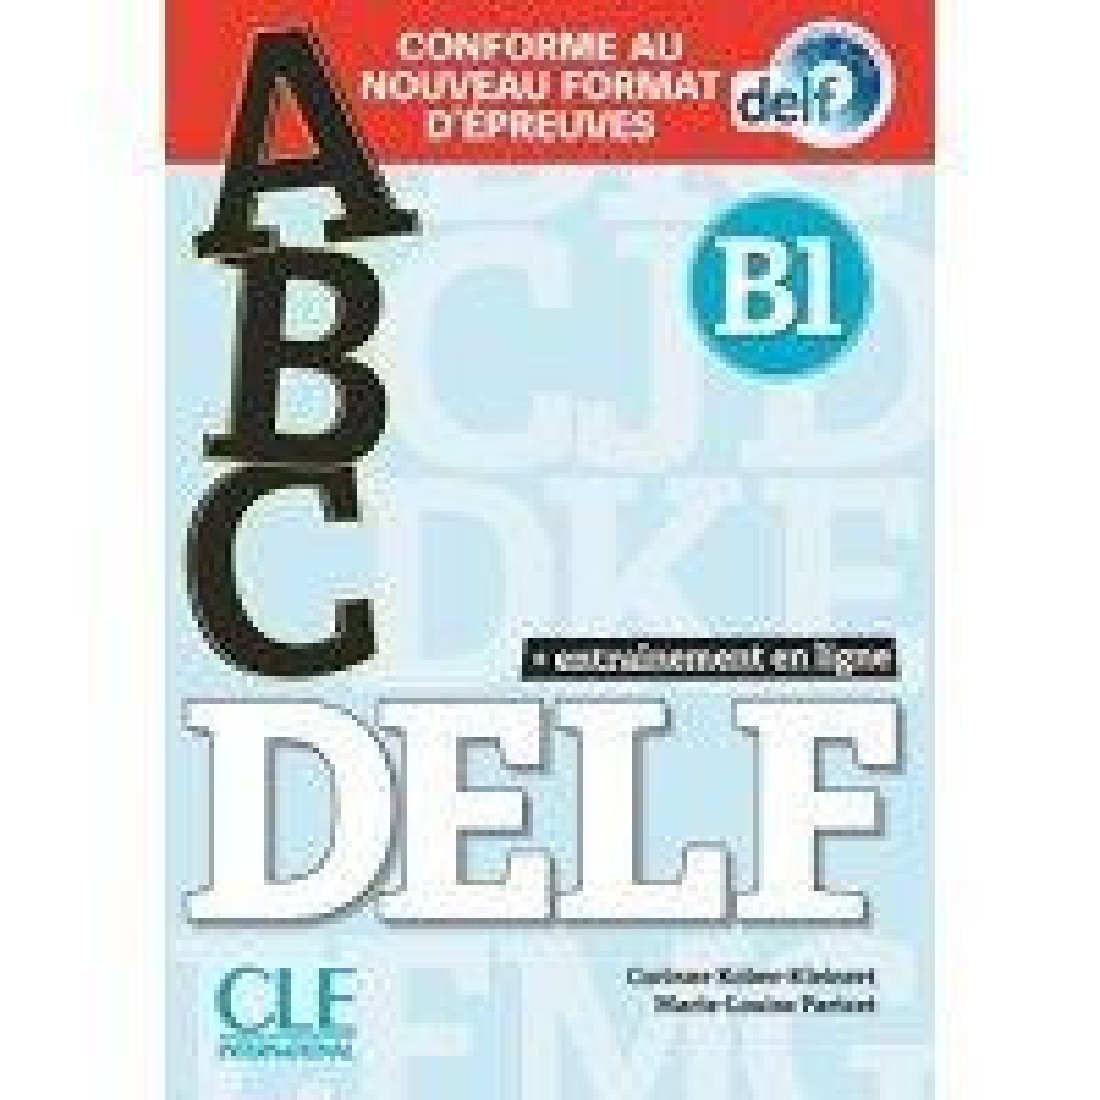 ABC DELF B1 (+ CD) 2ND ED